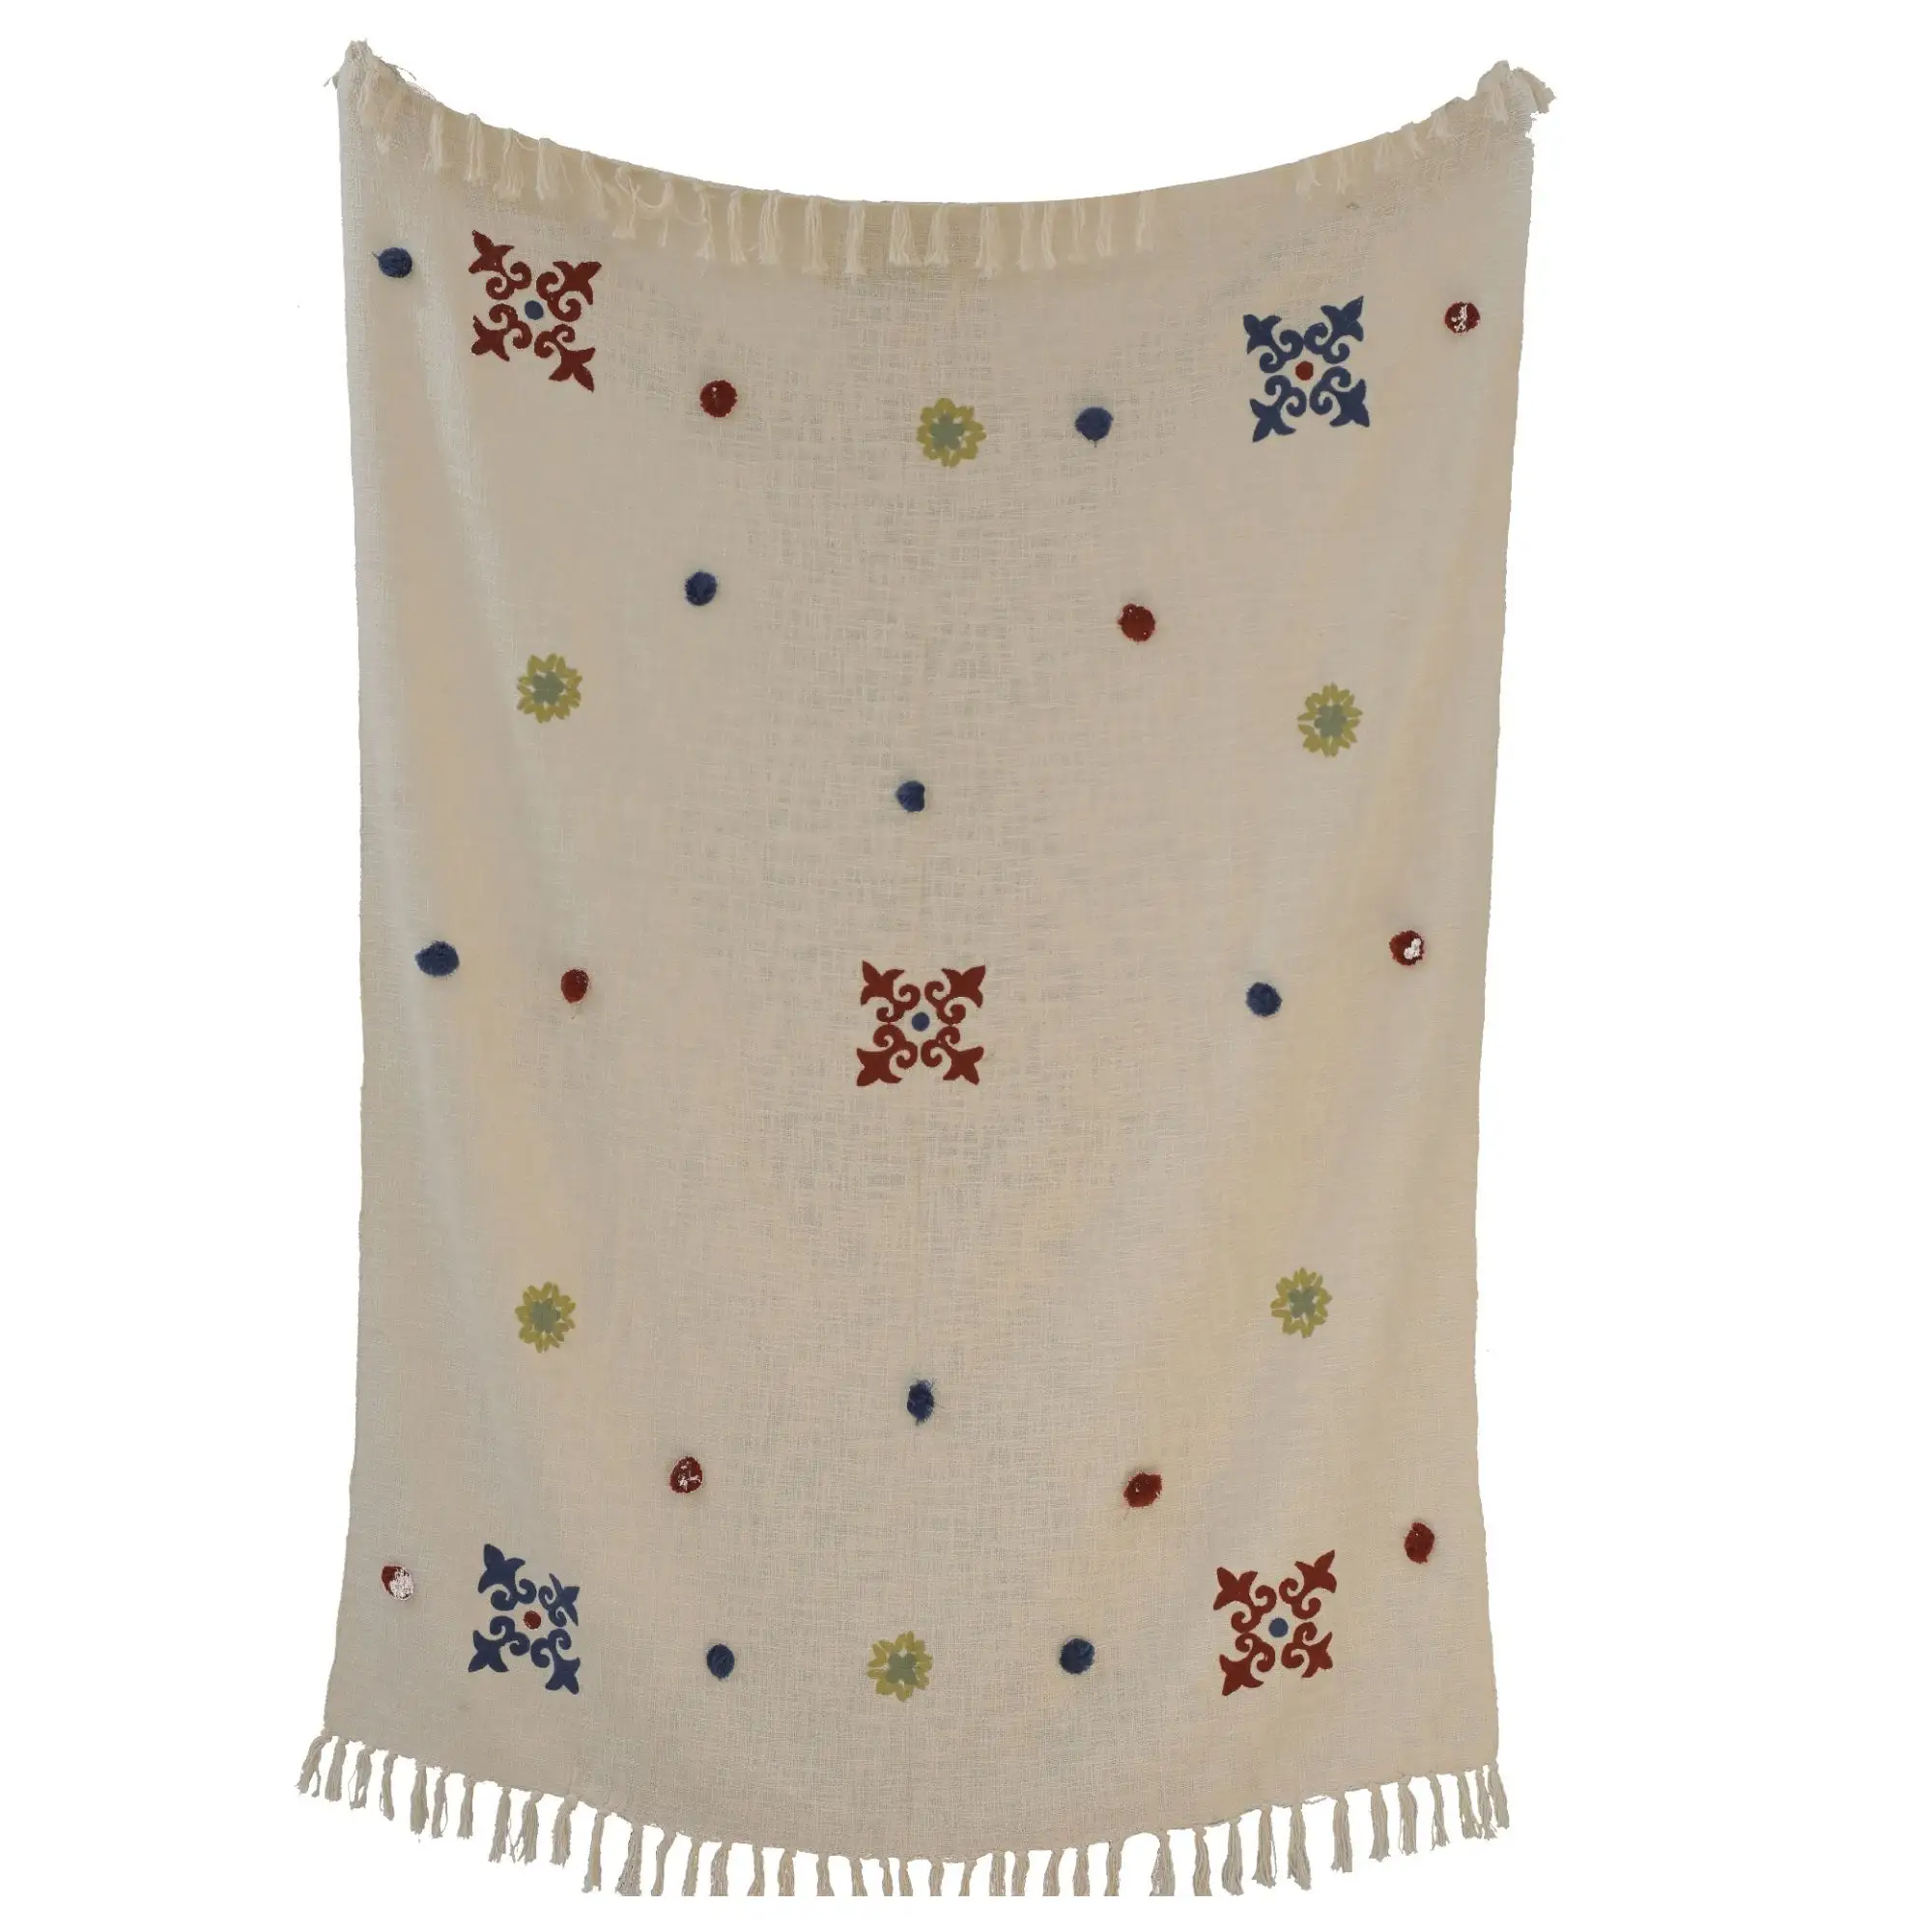 Işlemeli büyük kanepe atmak battaniye pamuktan dokuma pamuklu kanepe atmak battaniye hint dekoratif eve taşınma hediye atmak battaniye